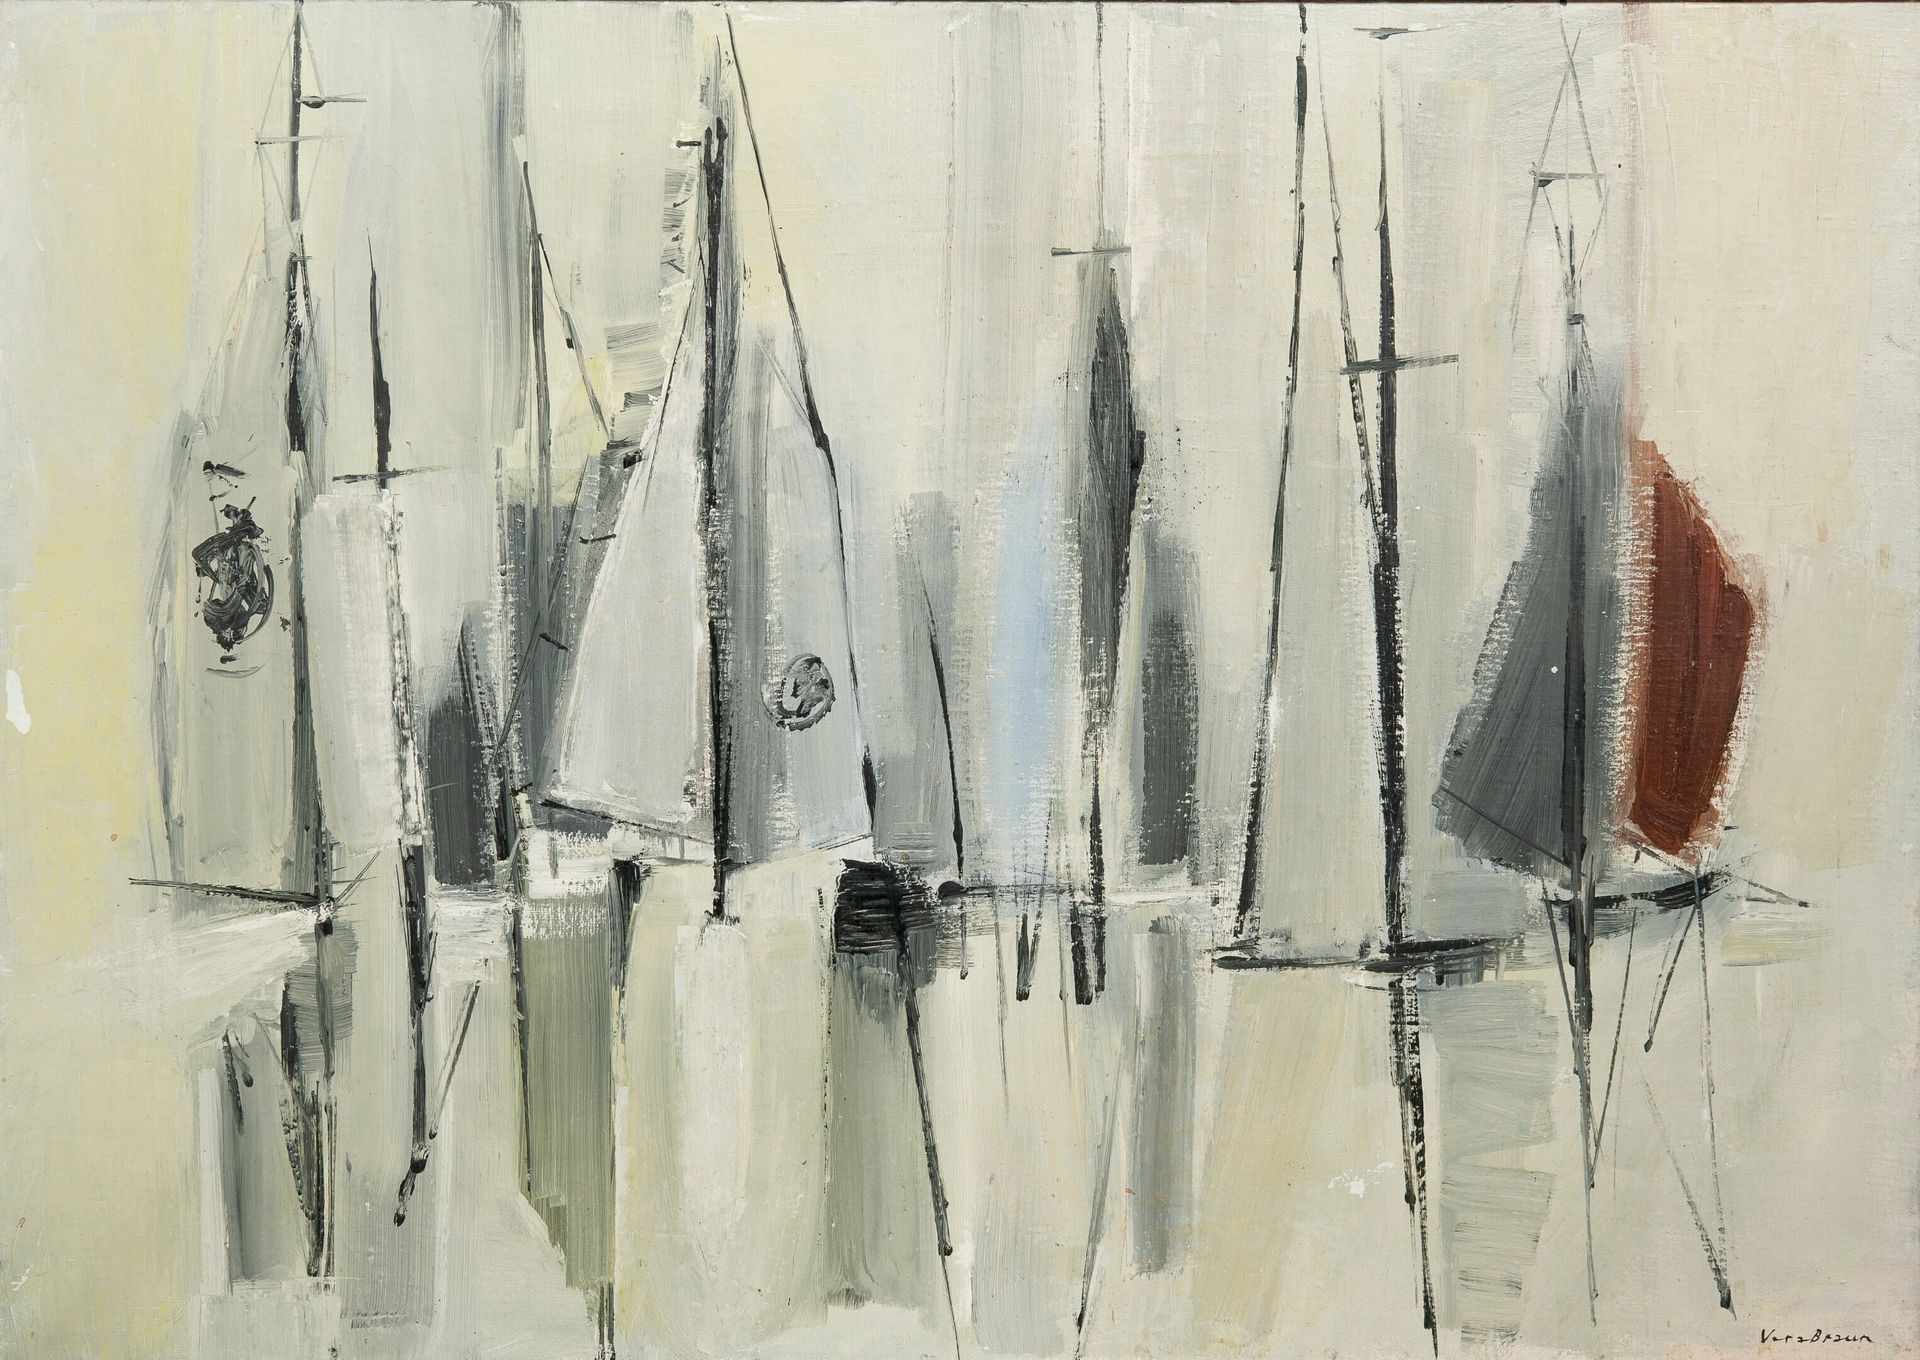 Véra BRAUN (1902-1997) 无题。

布面油画。

右下方有签名。

65 x 92厘米。

小污点、裂缝、下沉和小缺失。